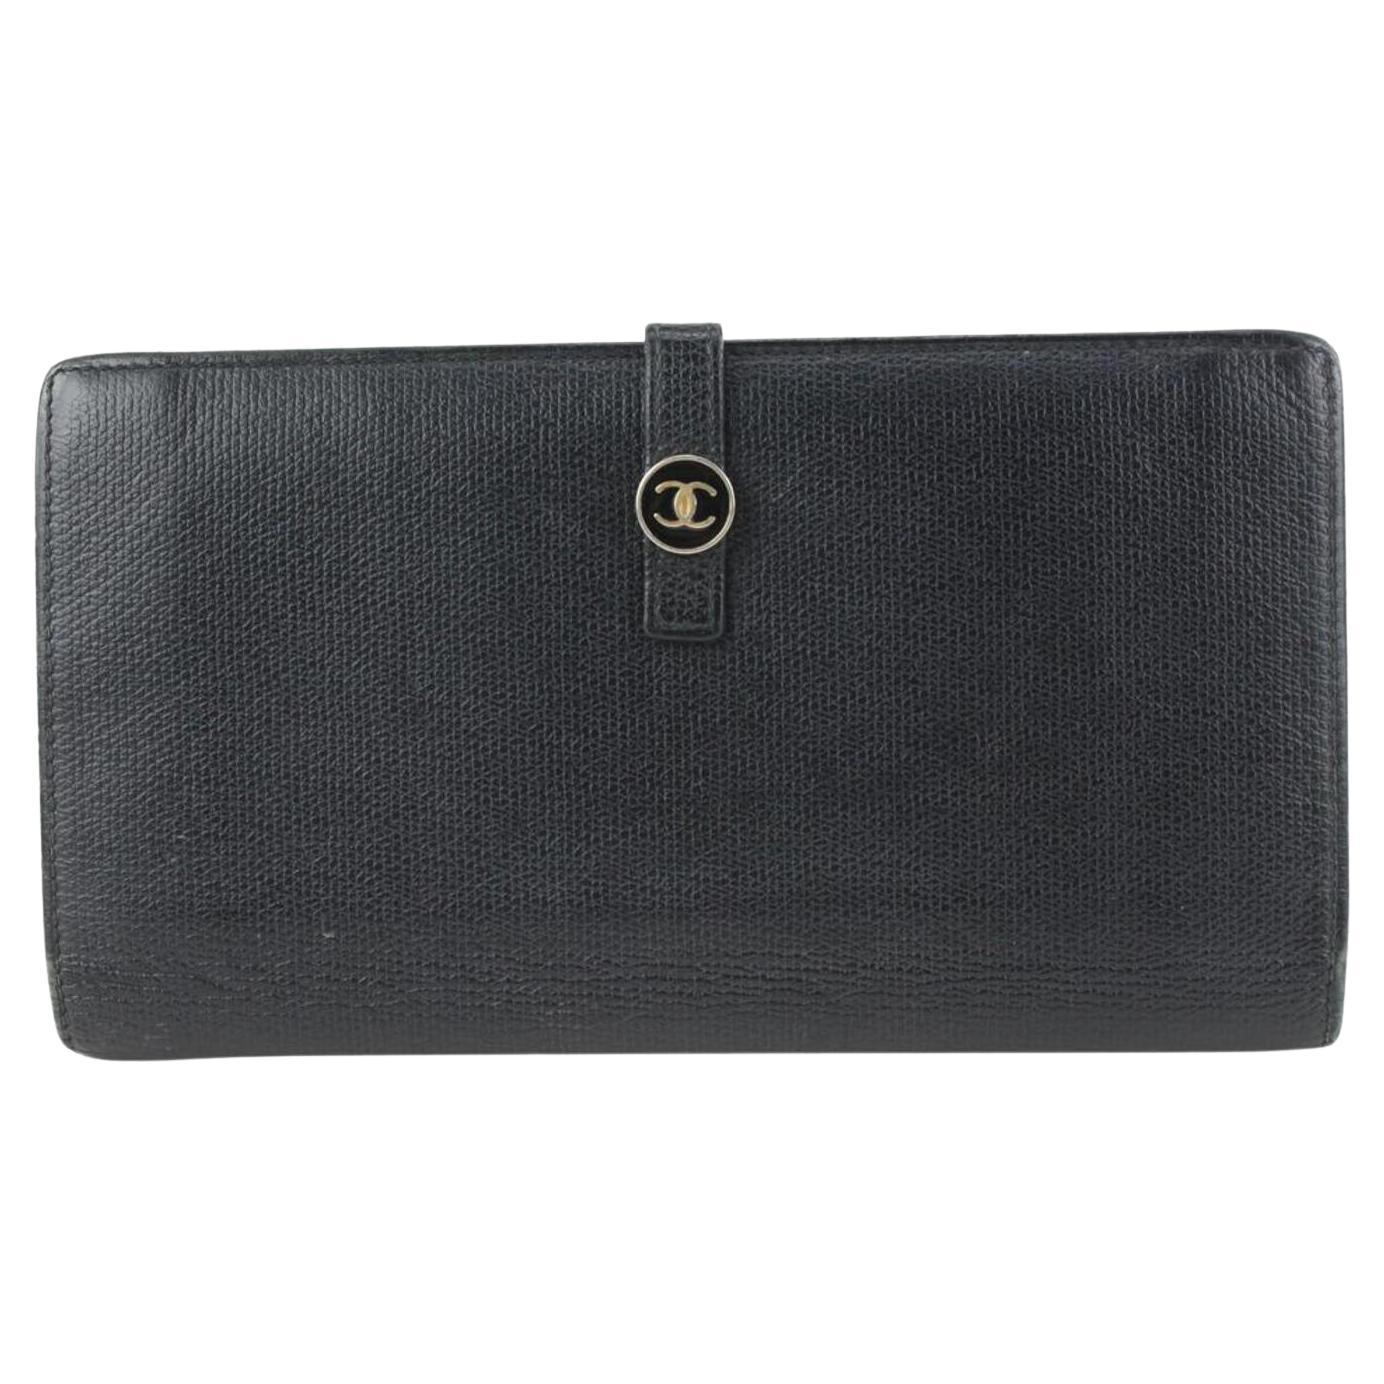 Chanel Black Calfskin Button Line Long Flap Wallet 81cas630